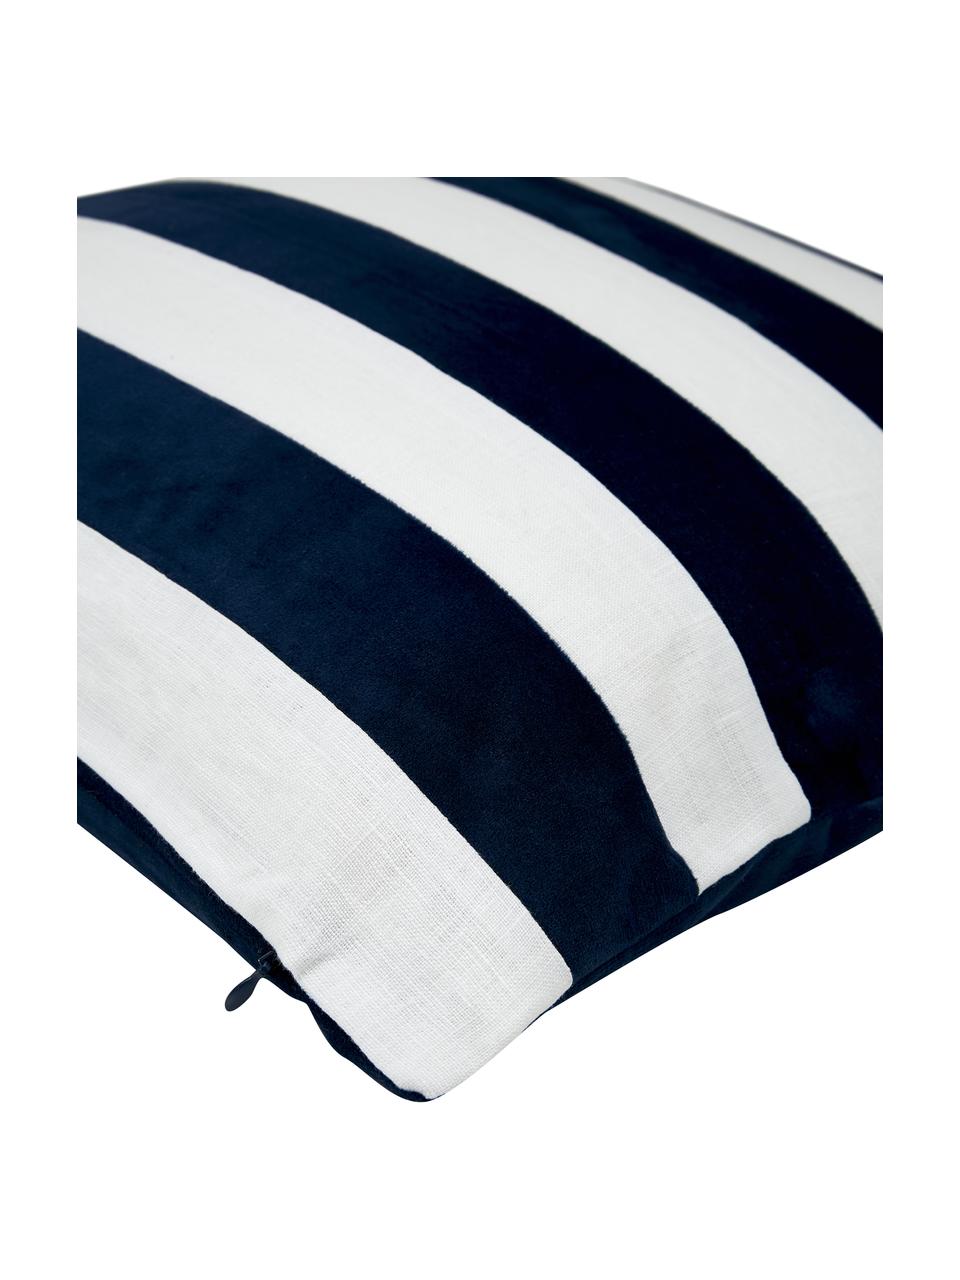 Kussenhoes Maui gemaakt van een fluweel-linnen mix in donkerblauw/wit, Donkerblauw, wit, B 45 x L 45 cm